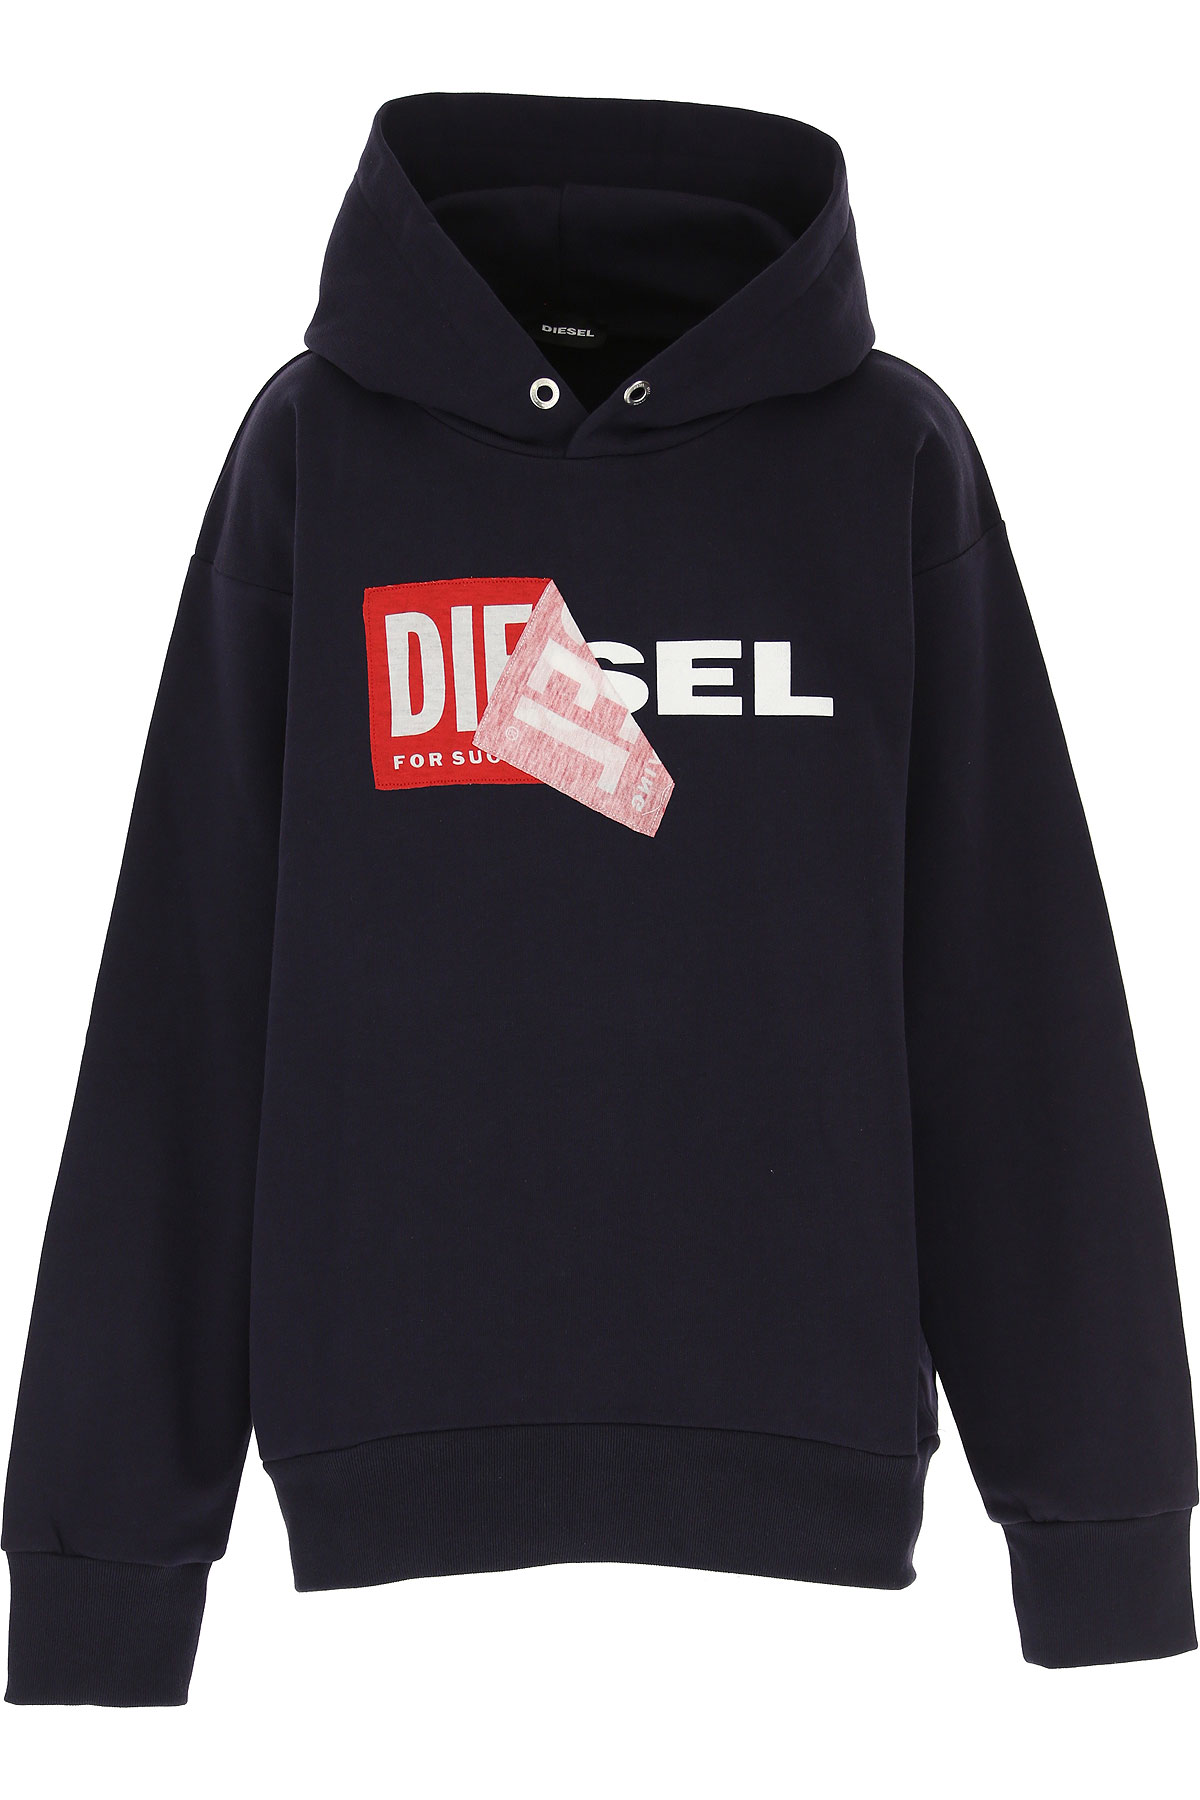 Diesel Kinder Sweatshirt & Kapuzenpullover für Jungen Günstig im Sale, Marine blau, Baumwolle, 2017, 12Y 14Y 8Y